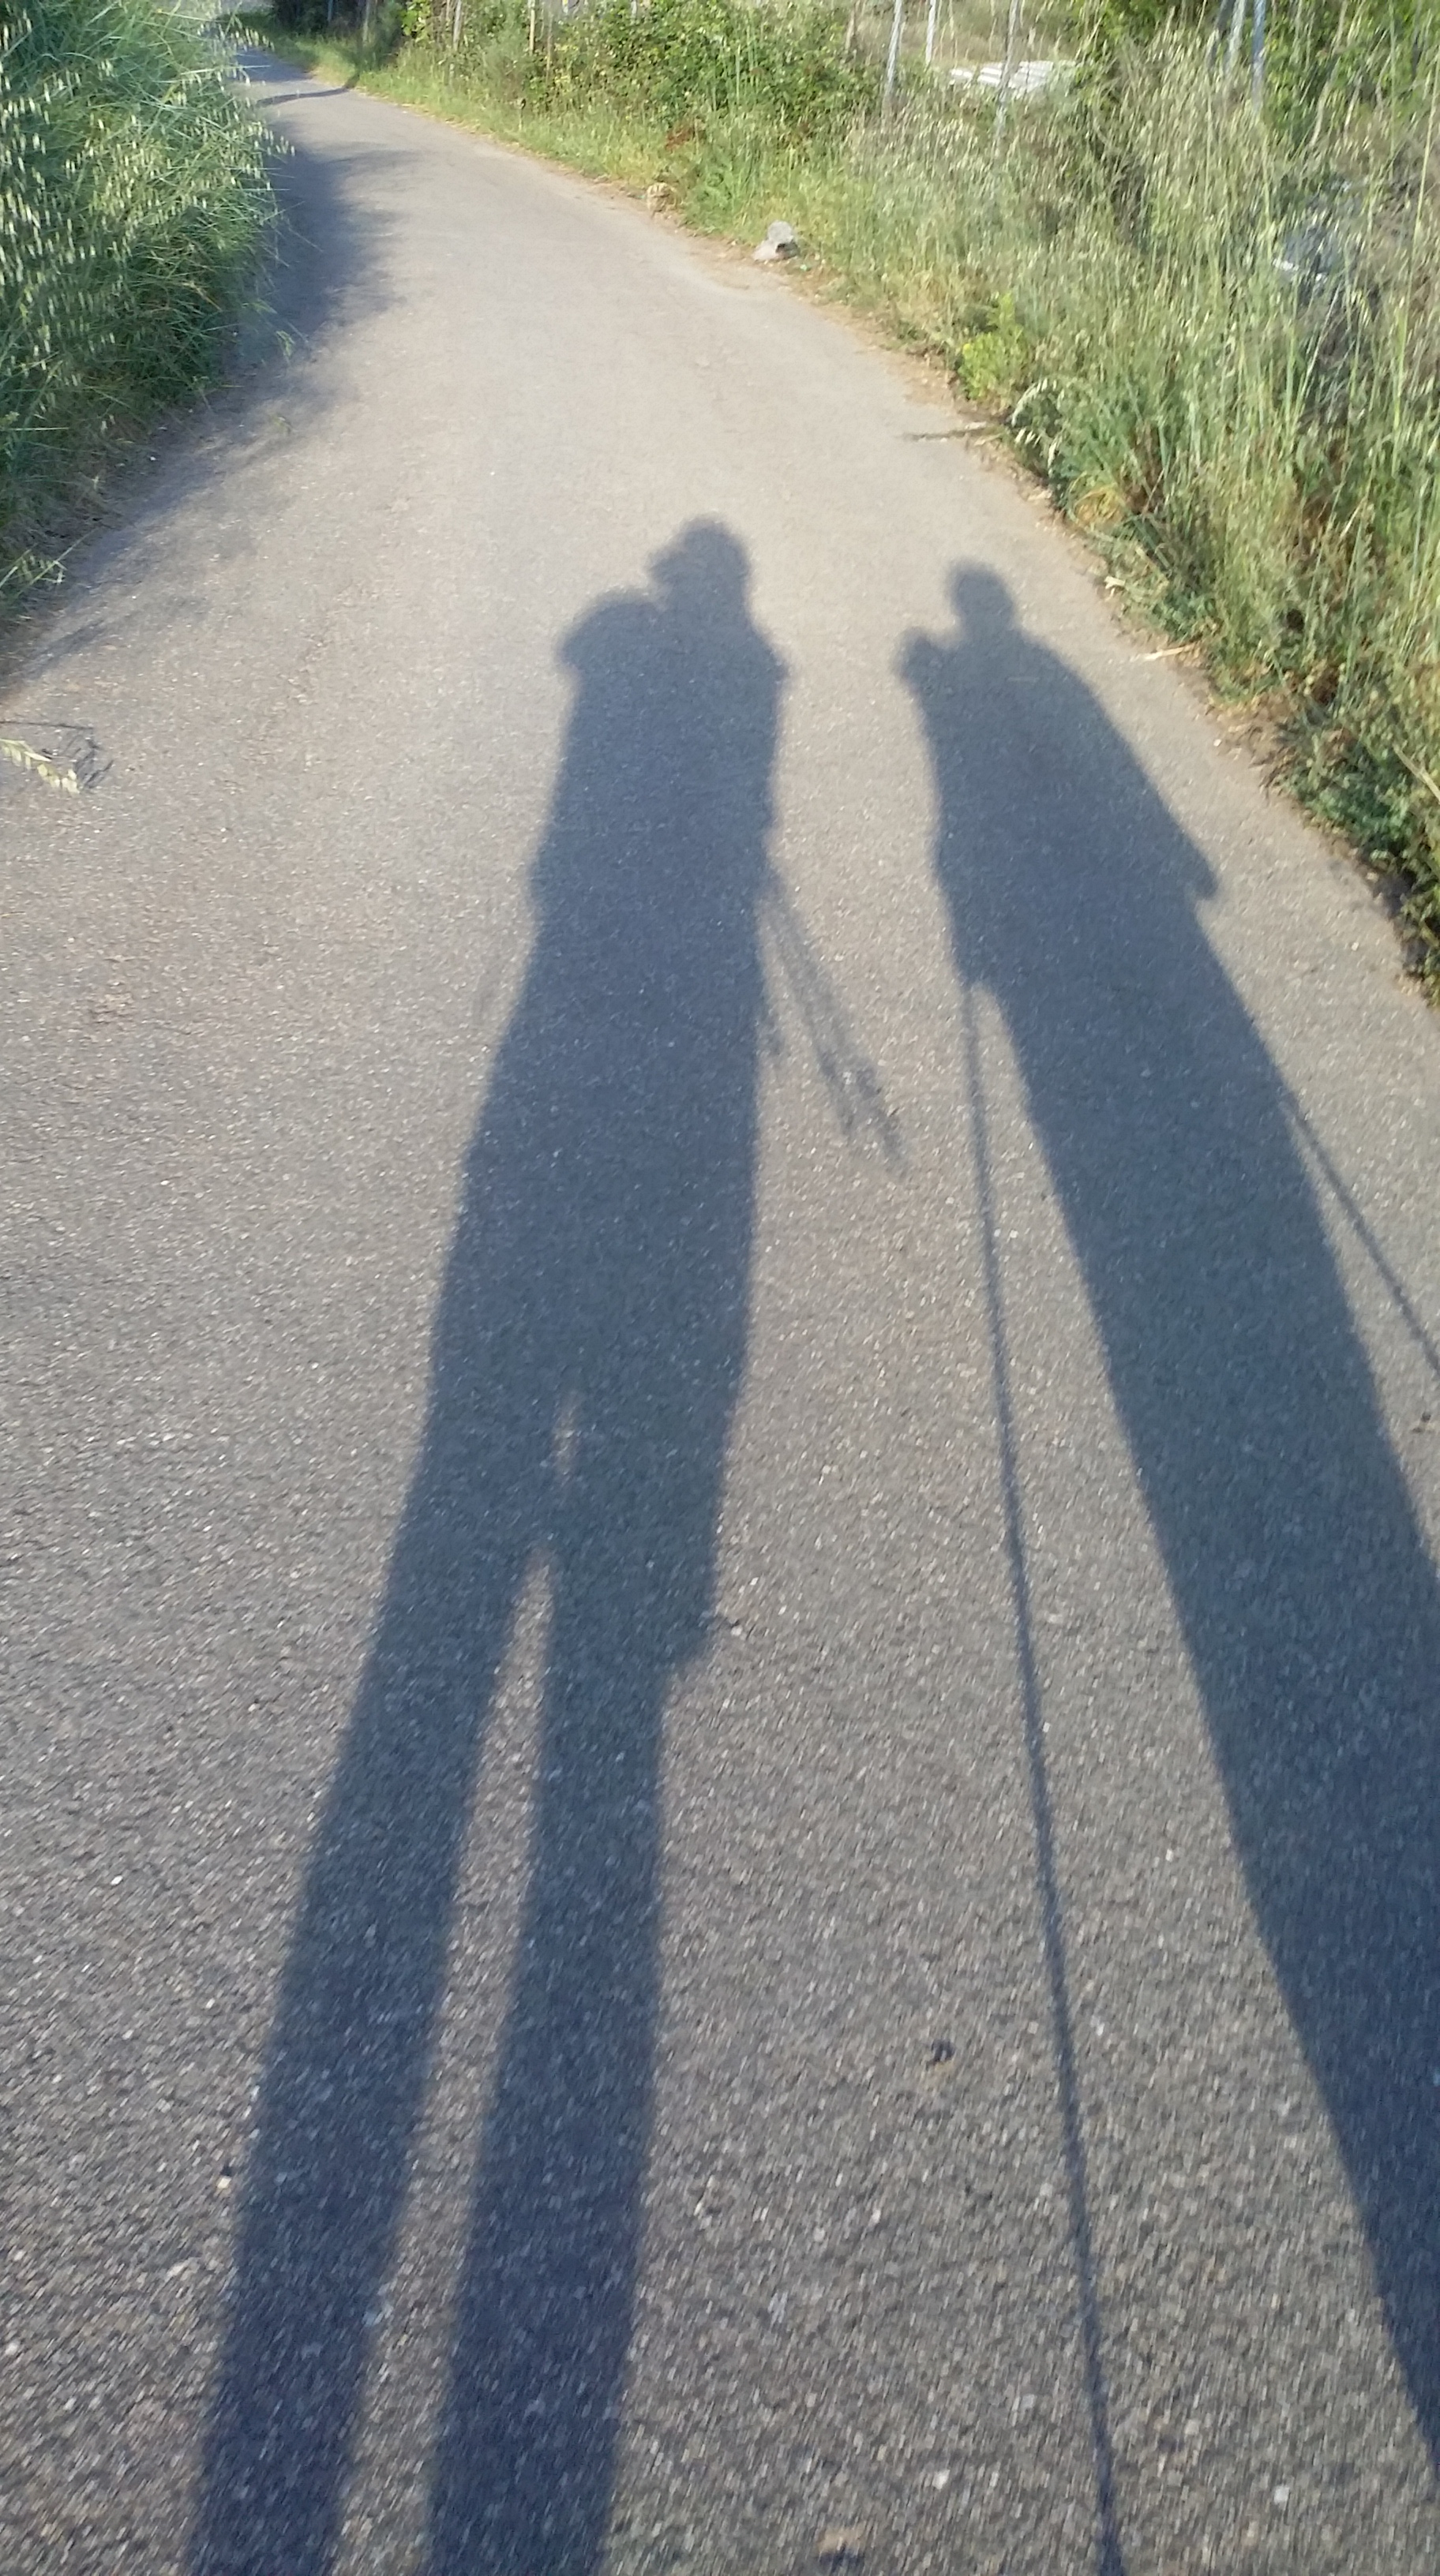 Eu e minha "parceirona"... em contato com nossas sombras, no Caminho de Santiago